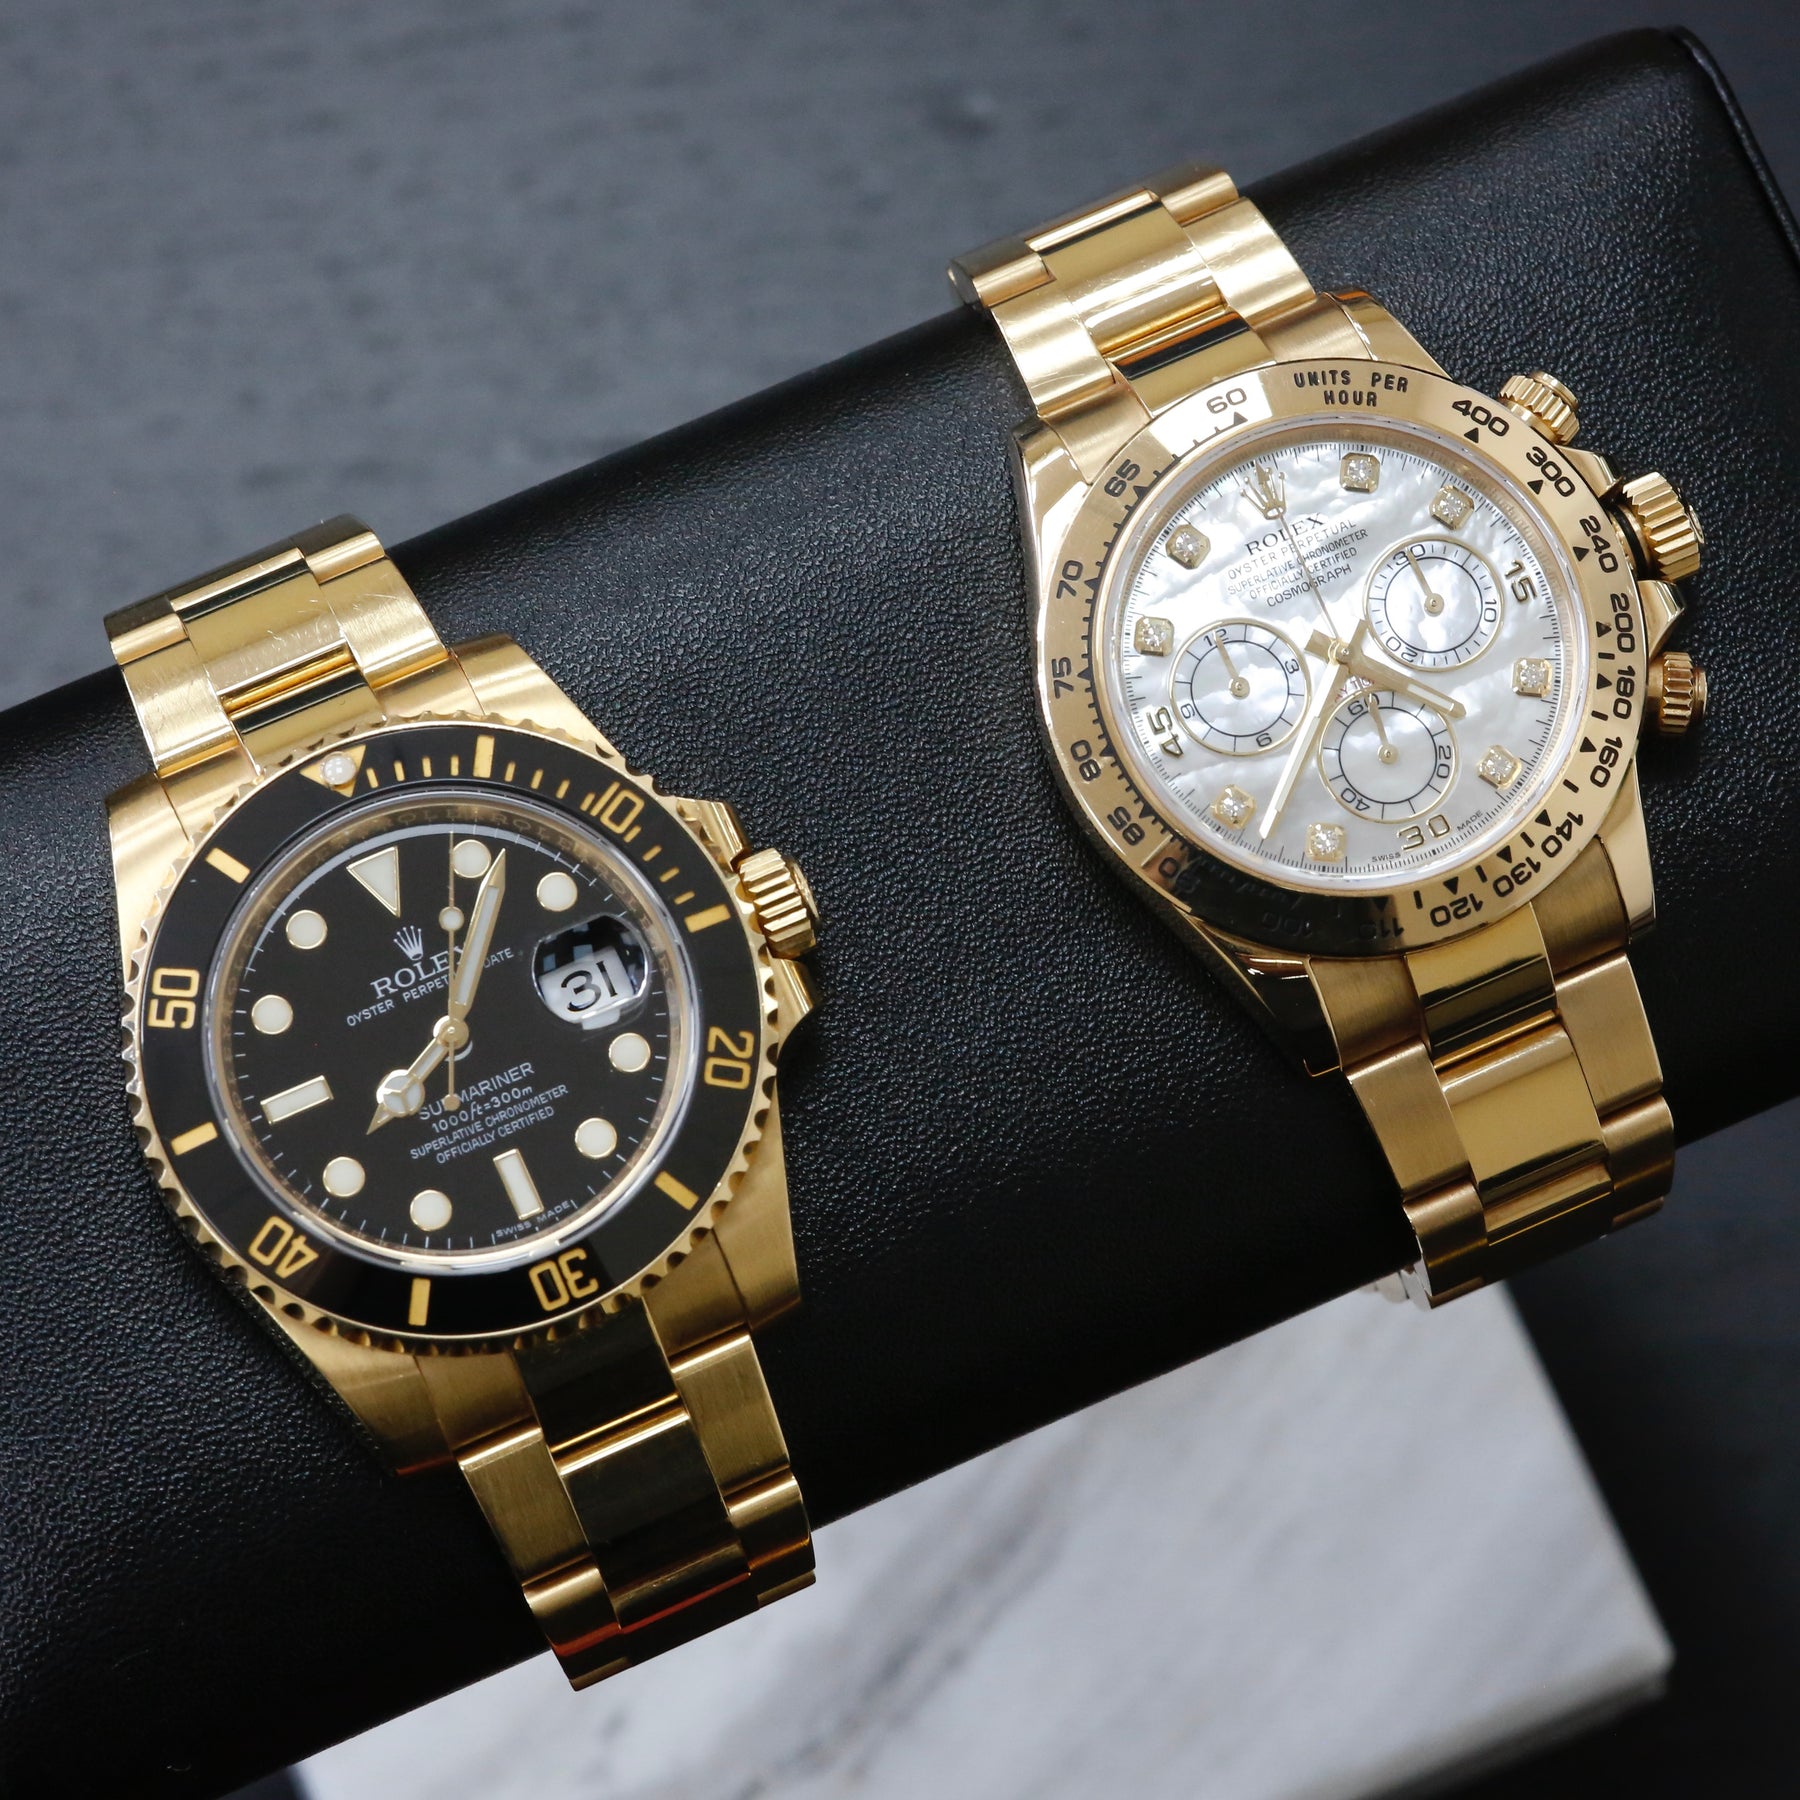 Gold Rolex Sport watches